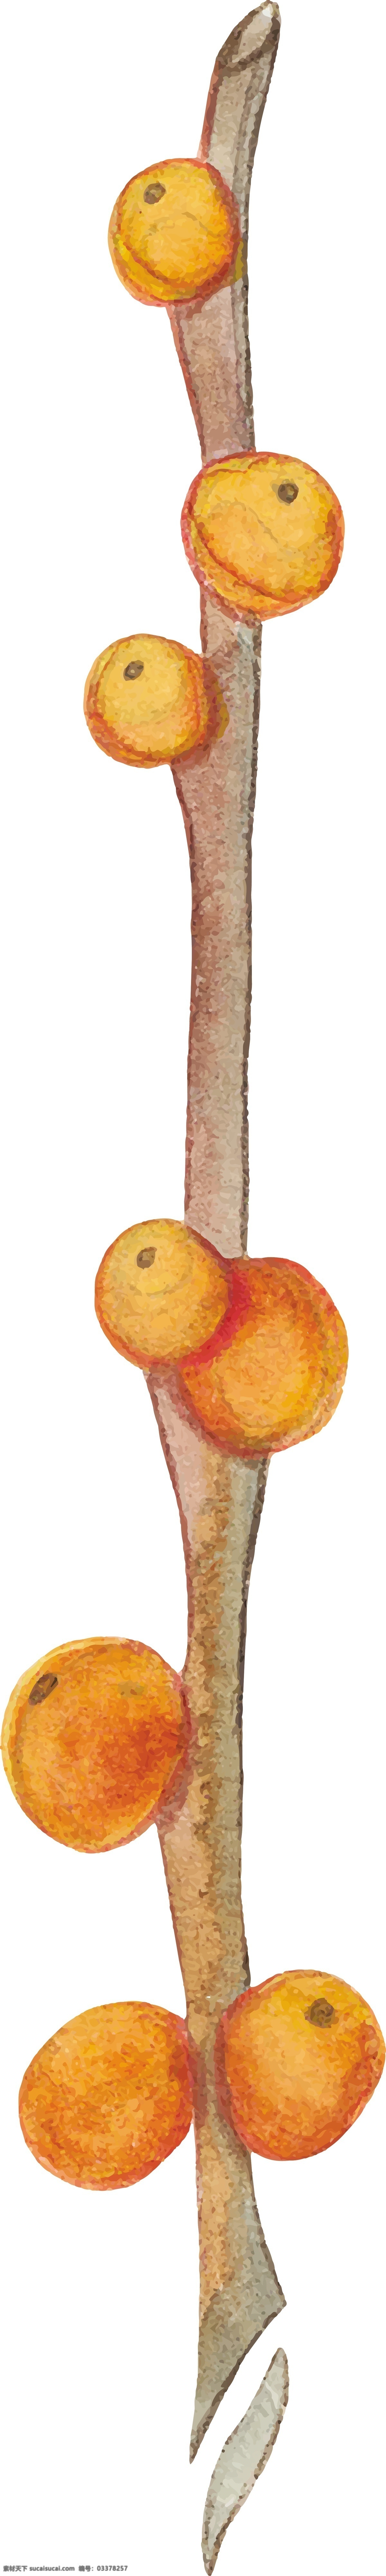 手绘 柿子 矢量 橘色 树枝 矢量素材 设计素材